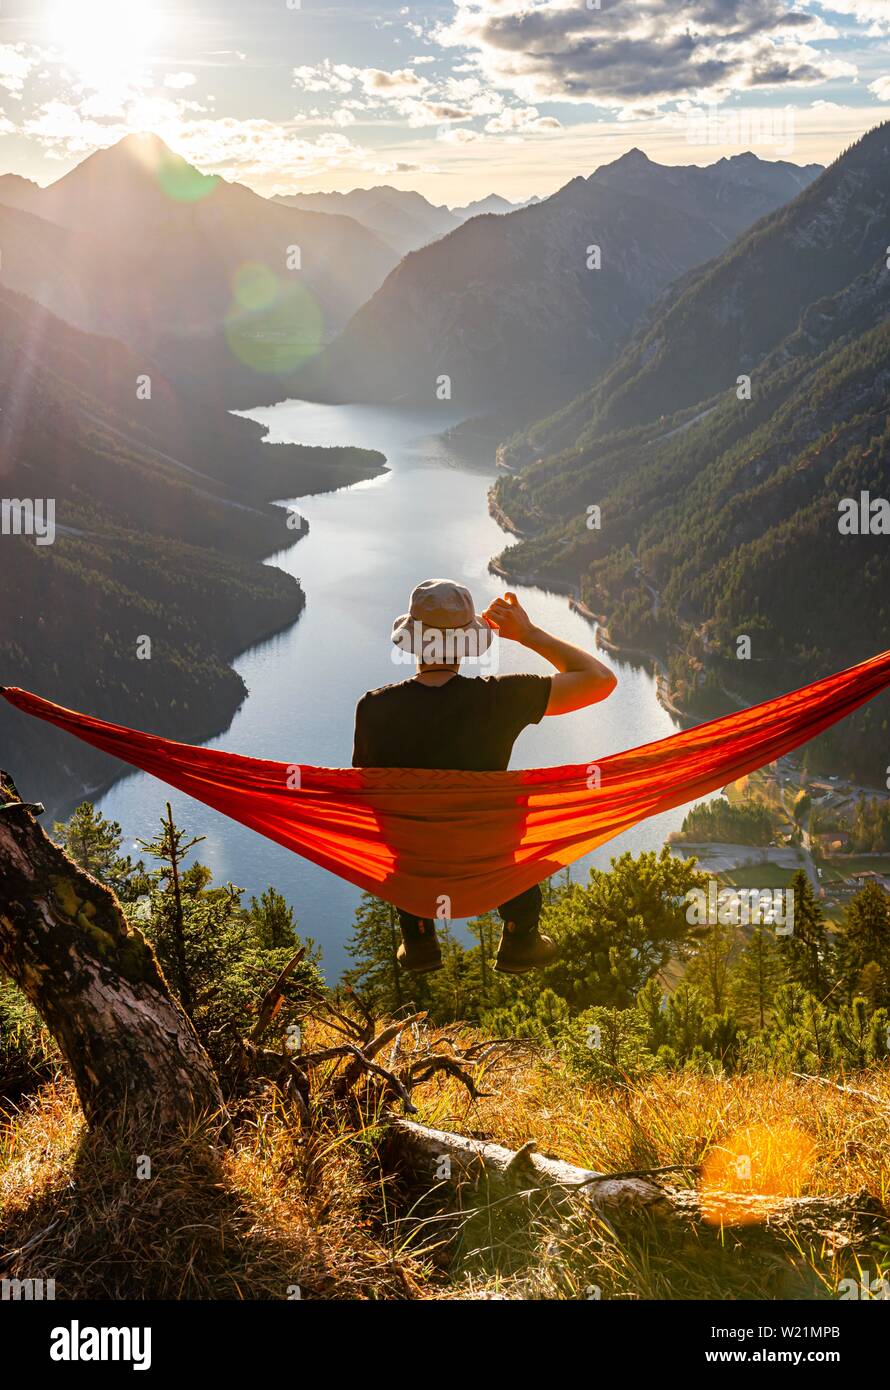 Mann mit einem Sonnenhut in einem orange Hängematte sitzen, Panoramablick  auf Berge mit See, Plansee, Tirol, Österreich Stockfotografie - Alamy